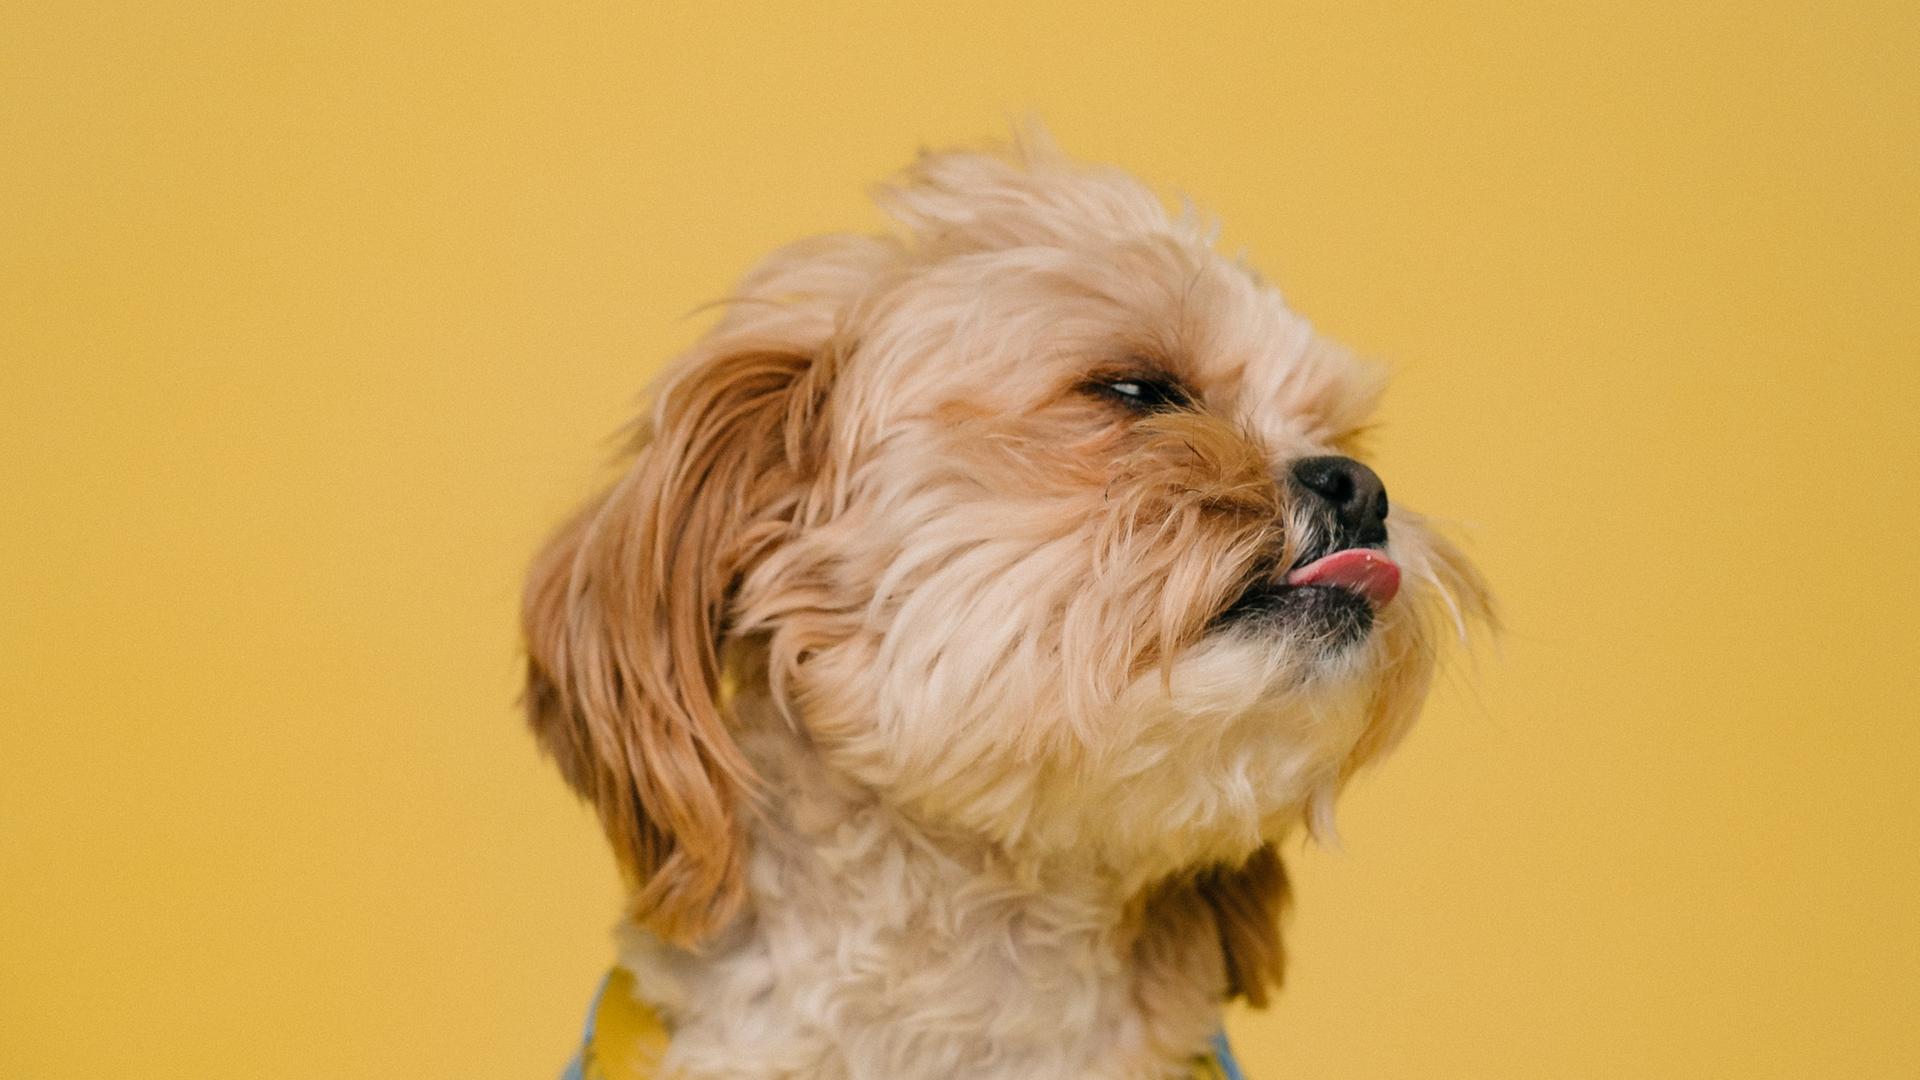 Ein kleiner Hund mit rötlich-braunem Fell trägt ein T-Shirt mit Bananenaufdruck und streckt die Zunge raus.